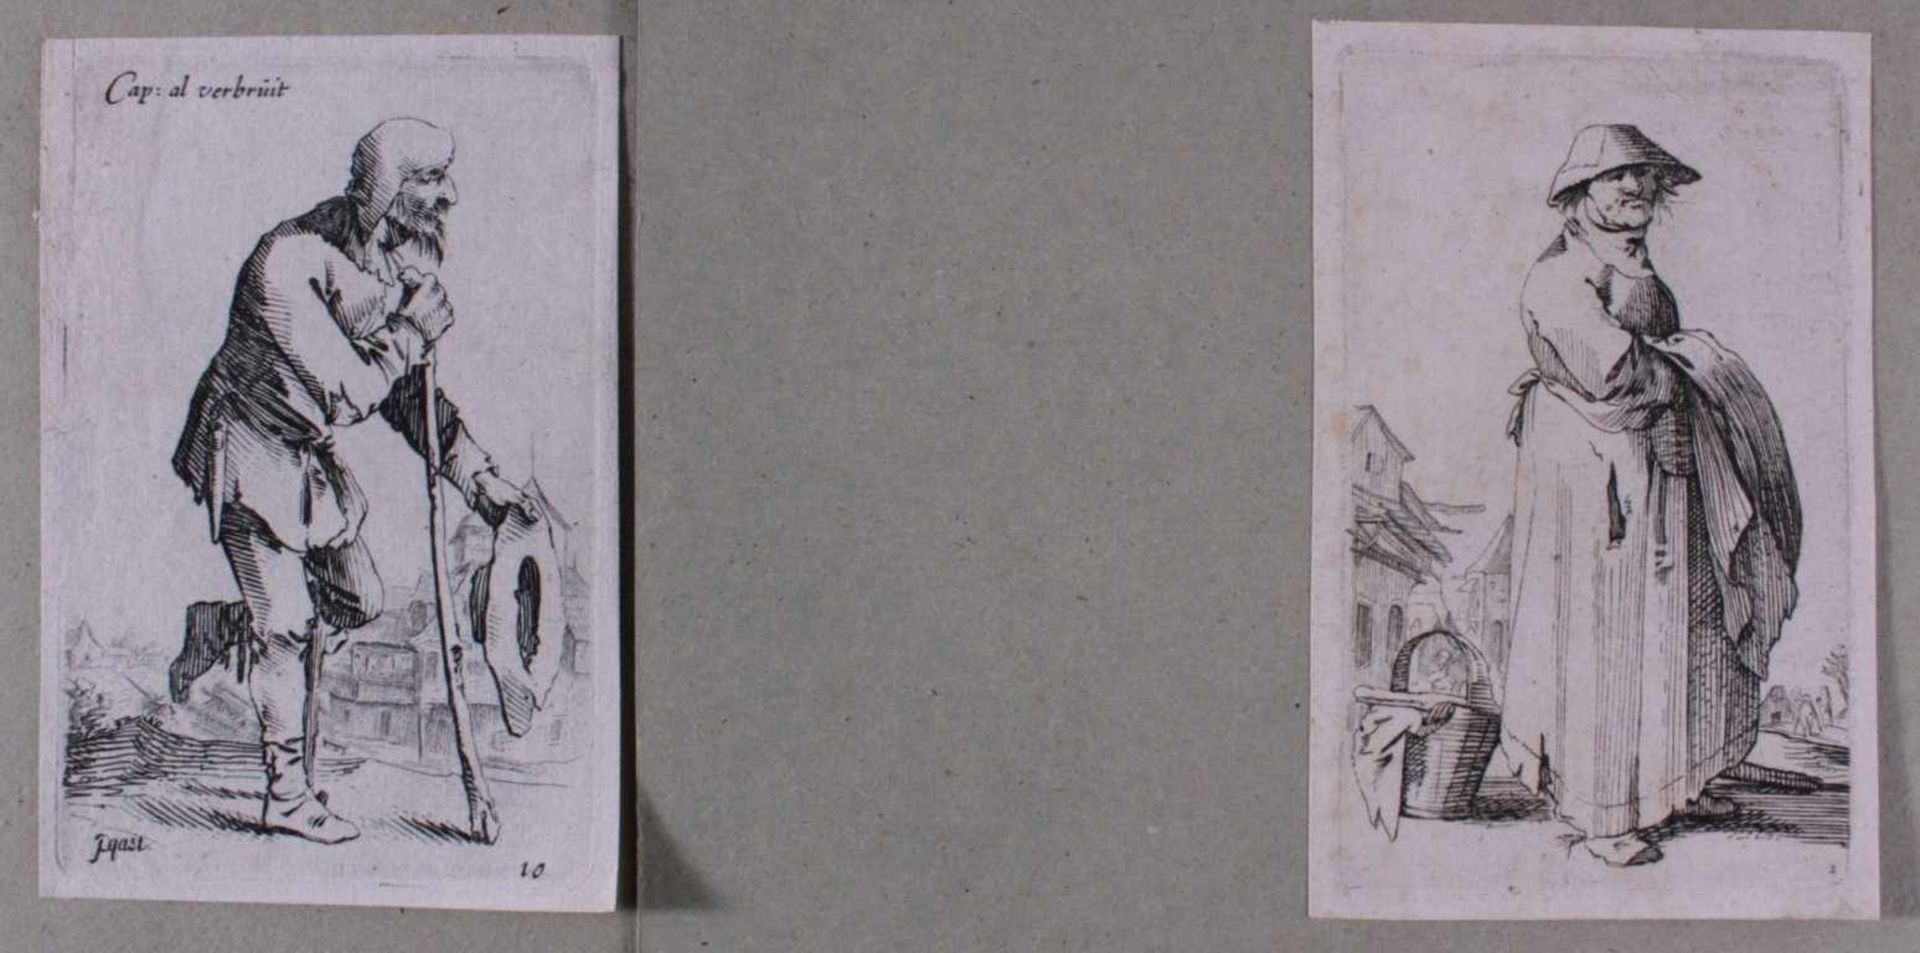 Pieter Jansz. Quast (1606 Amsterdam 1647)Zwei Kupferstiche, "Cap:al Verbruit", "Mann mit Hut in